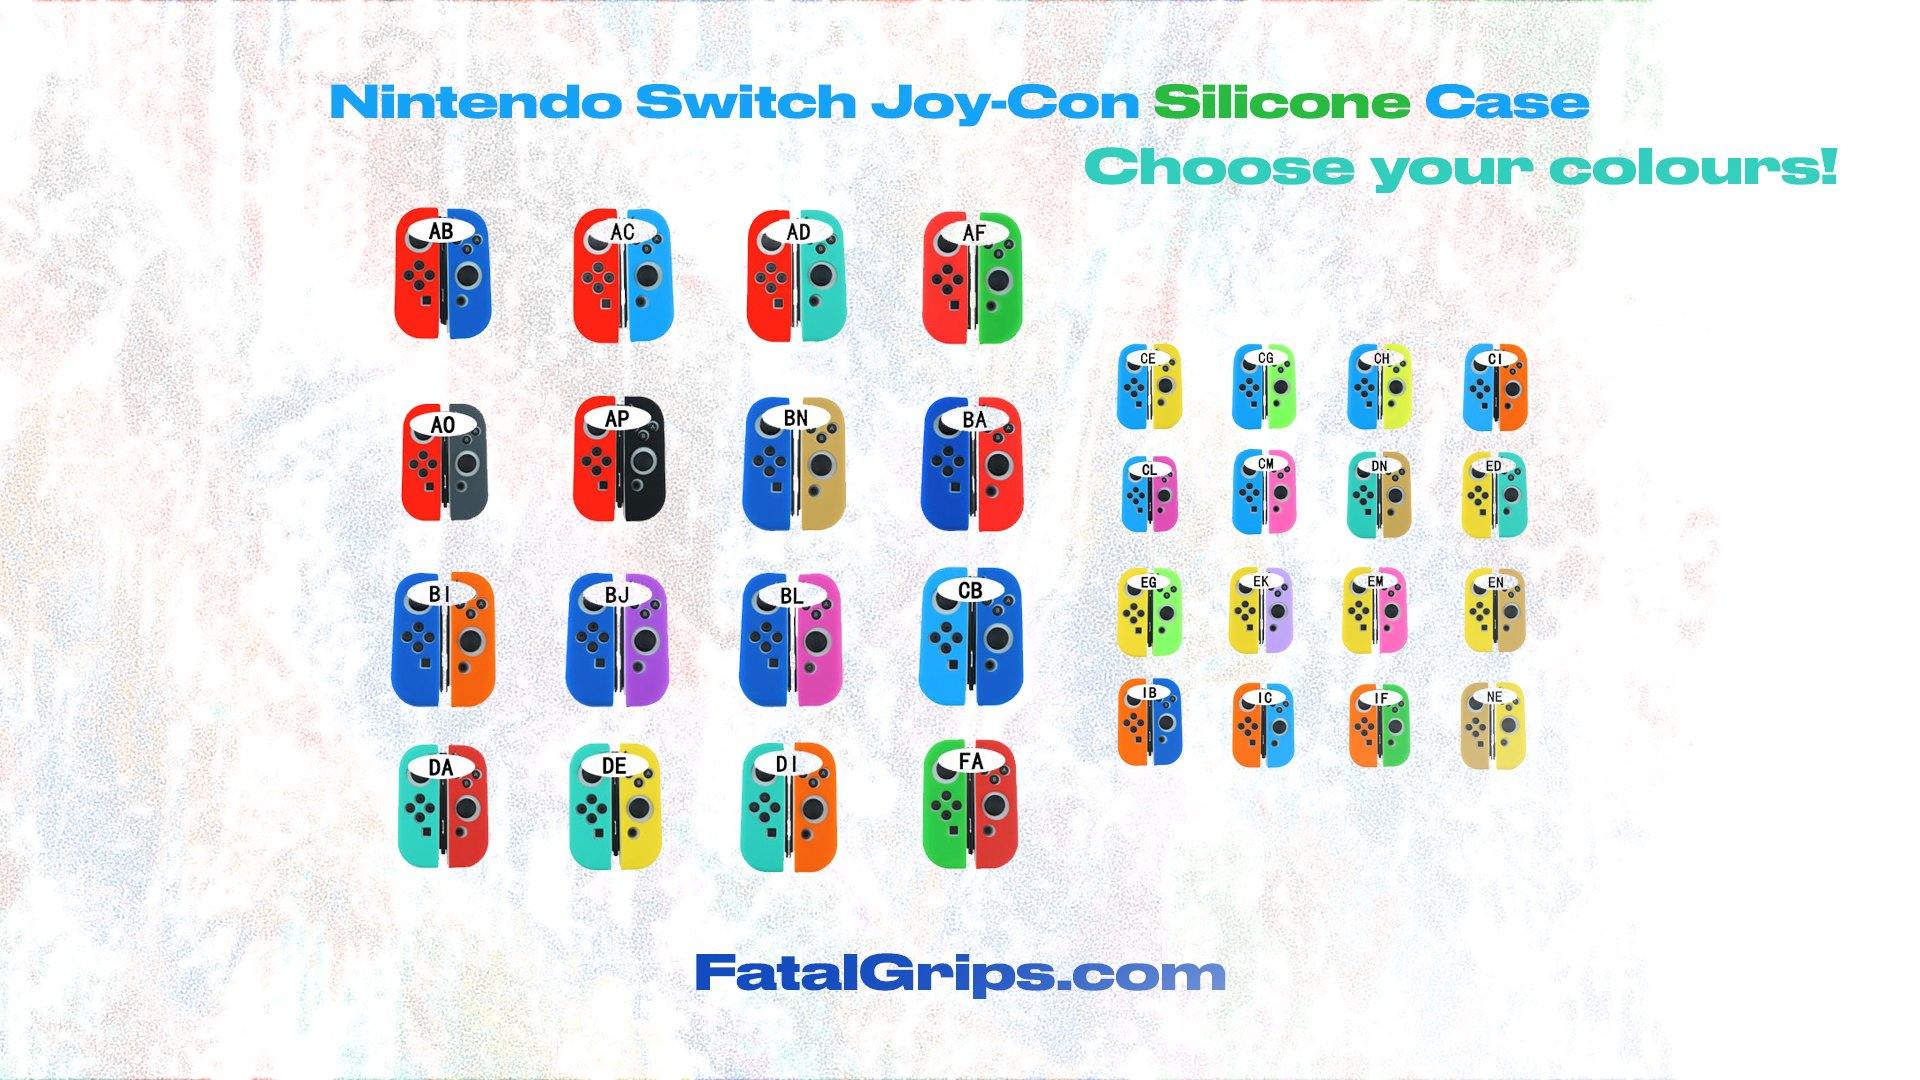 Nintendo Switch Joy-Con Case - Fatal Grips